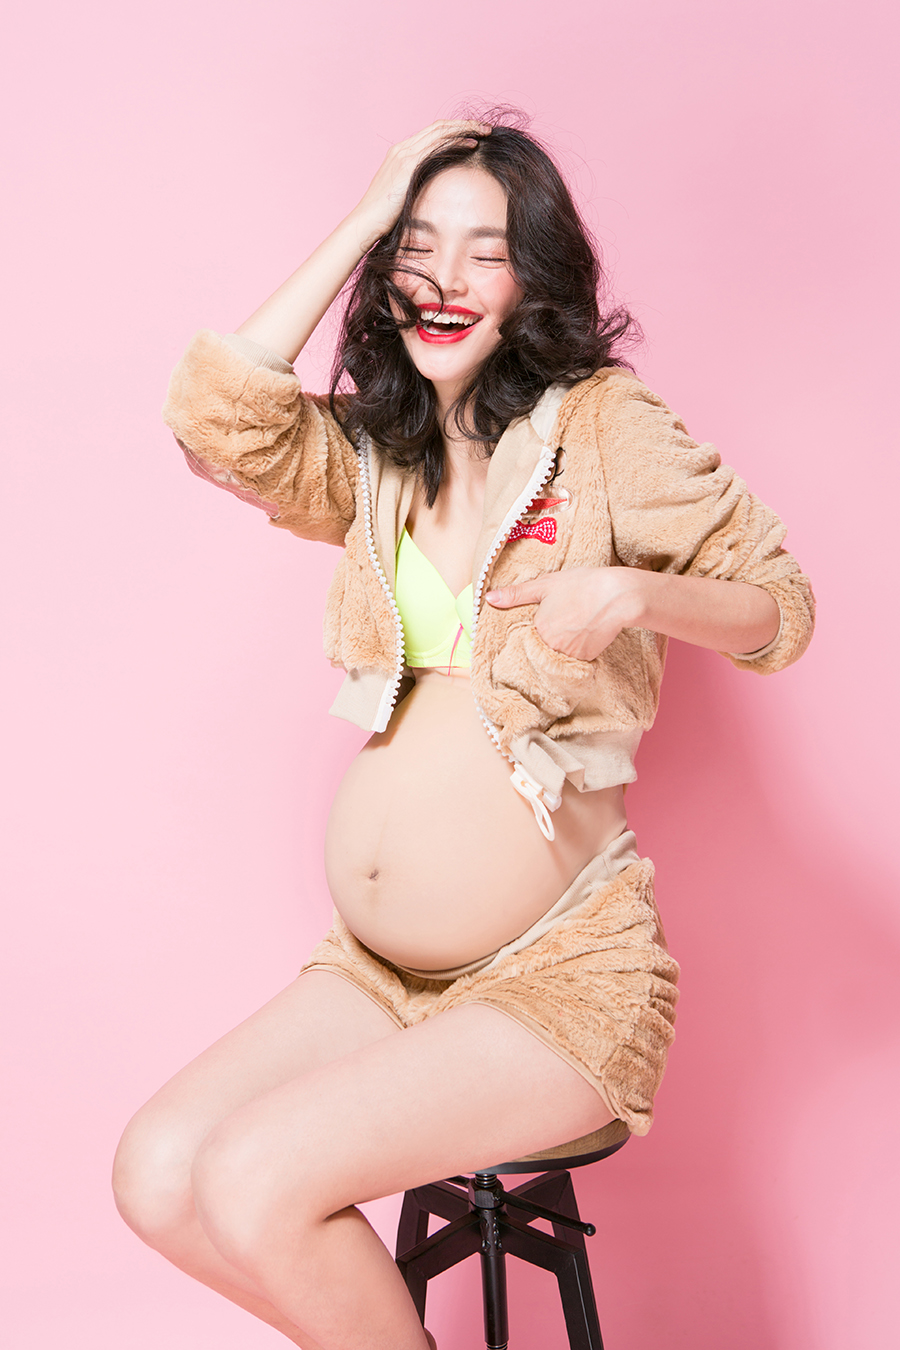 孕妇摄影写真样片，时尚室内粉色纯色背景照片素材